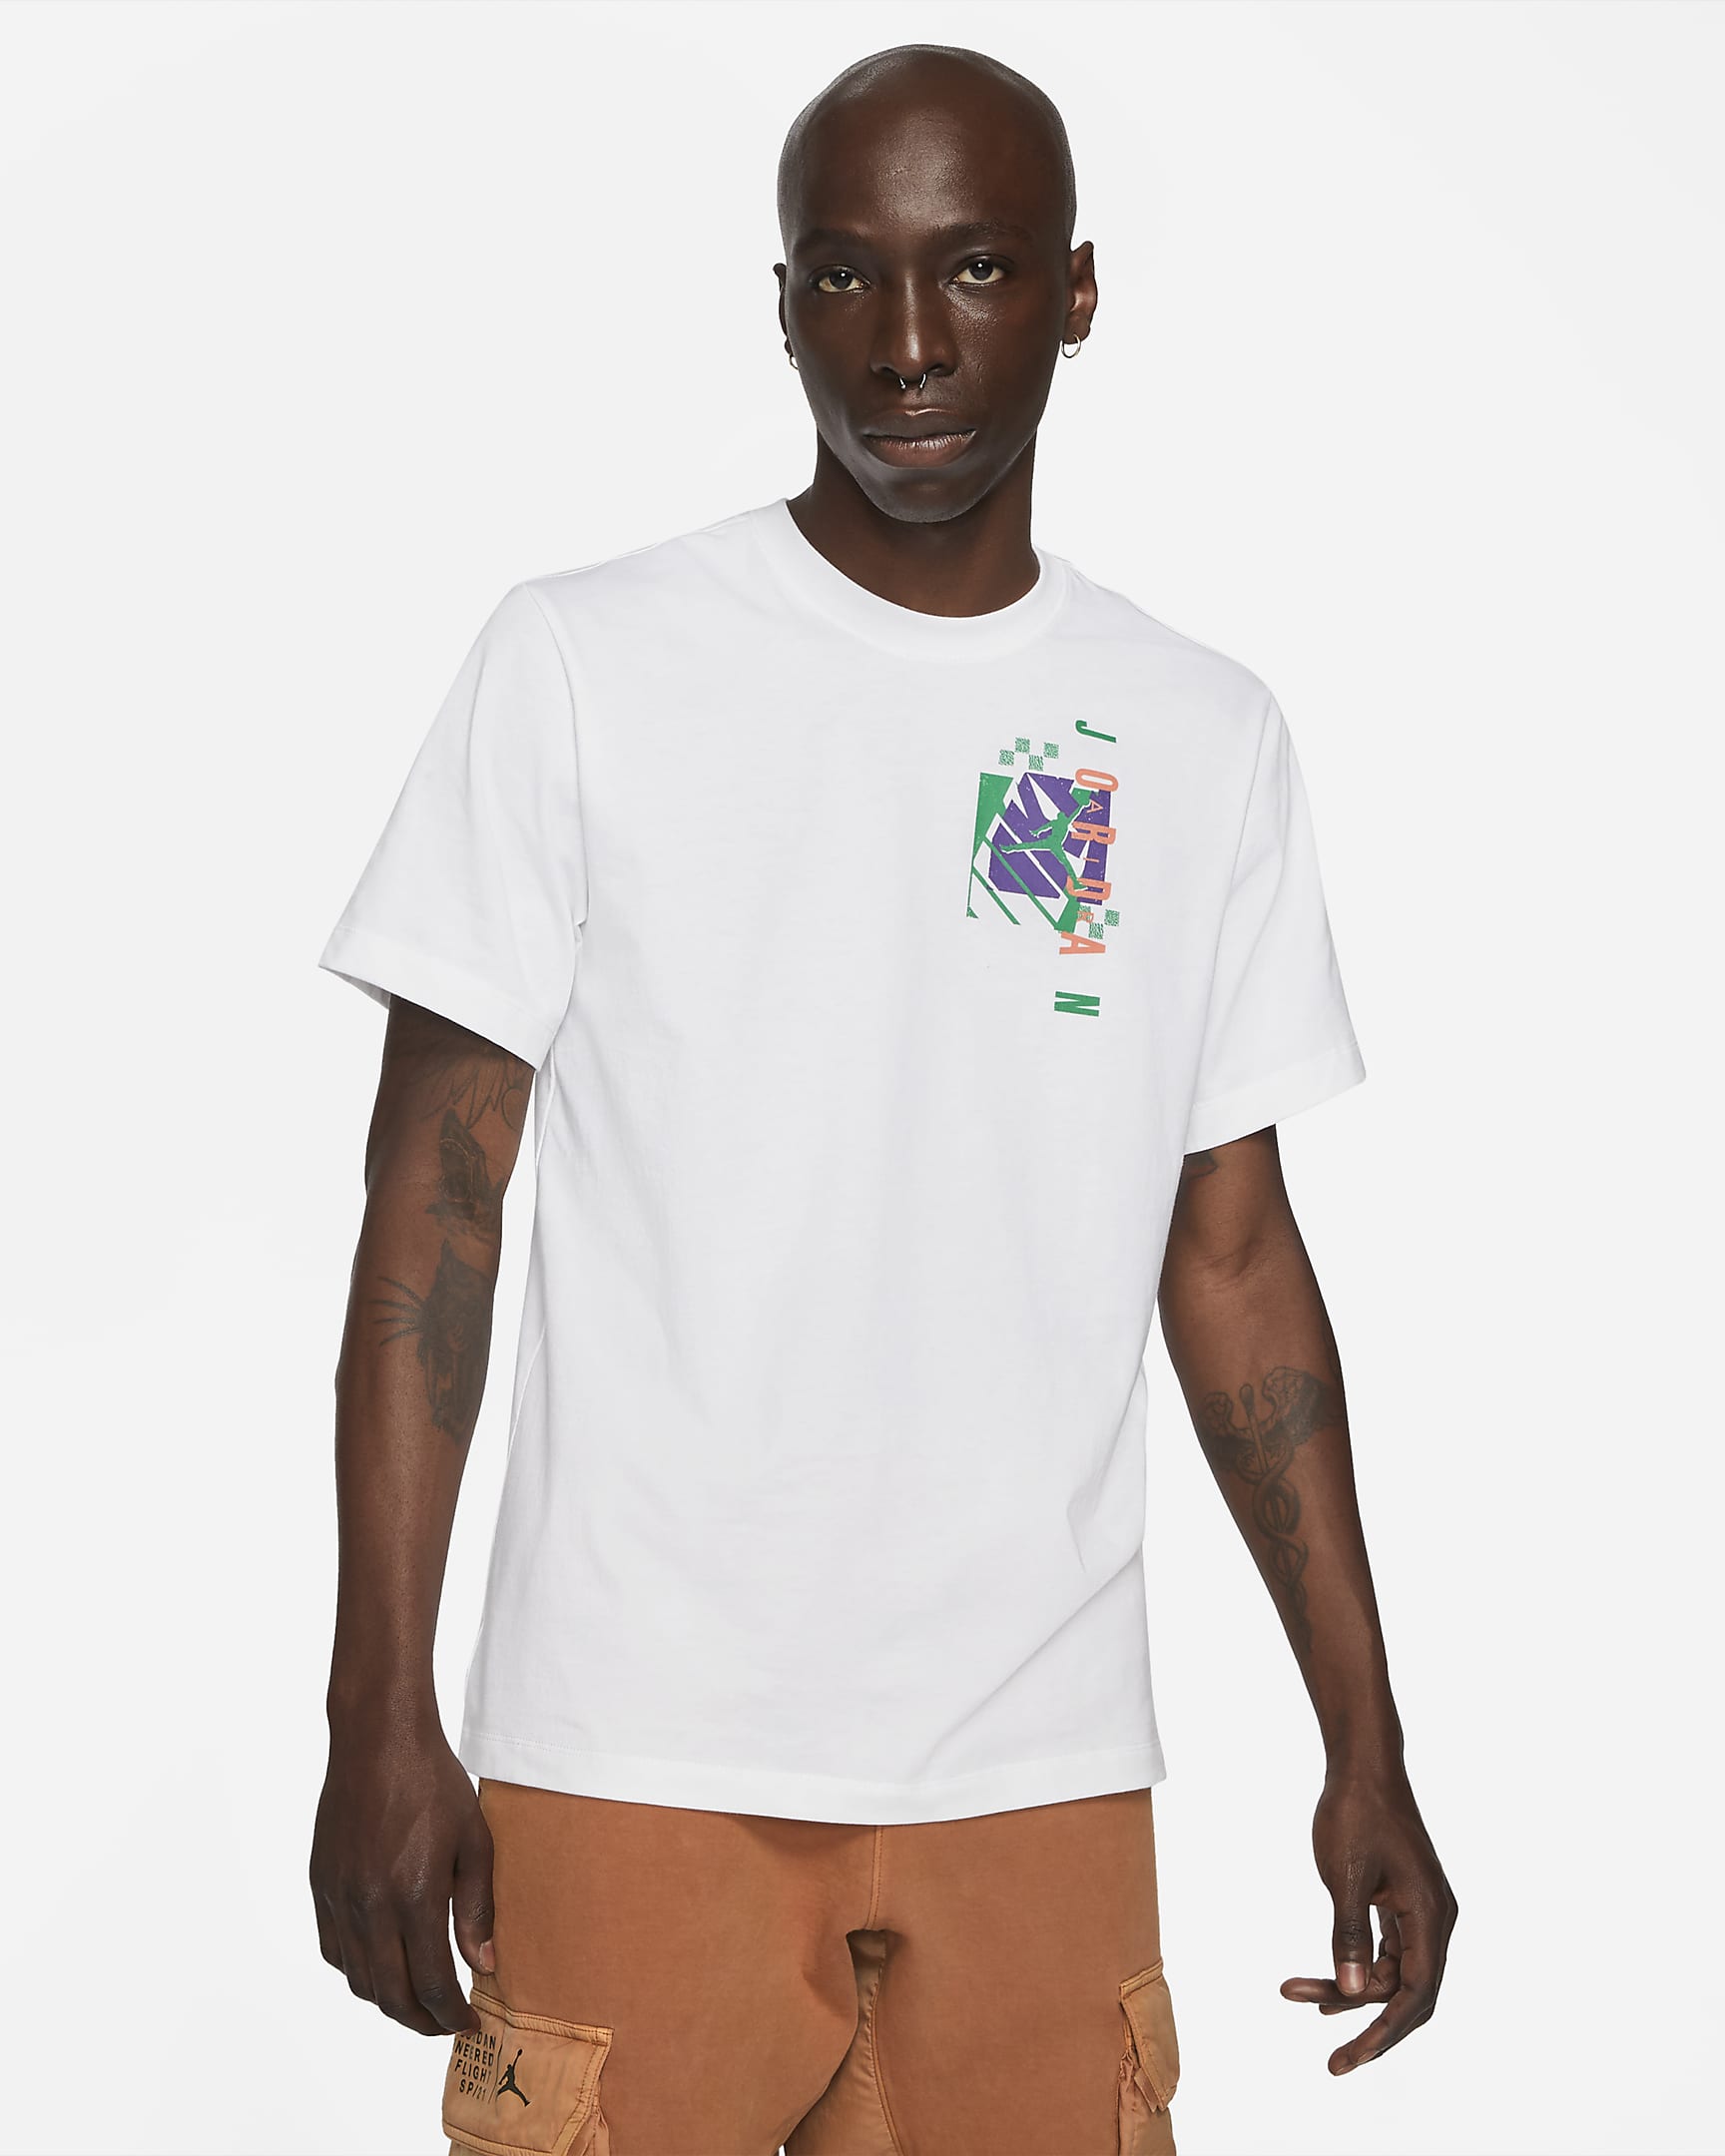 jordan-air-futura-mens-short-sleeve-t-shirt-5LkrBk.png